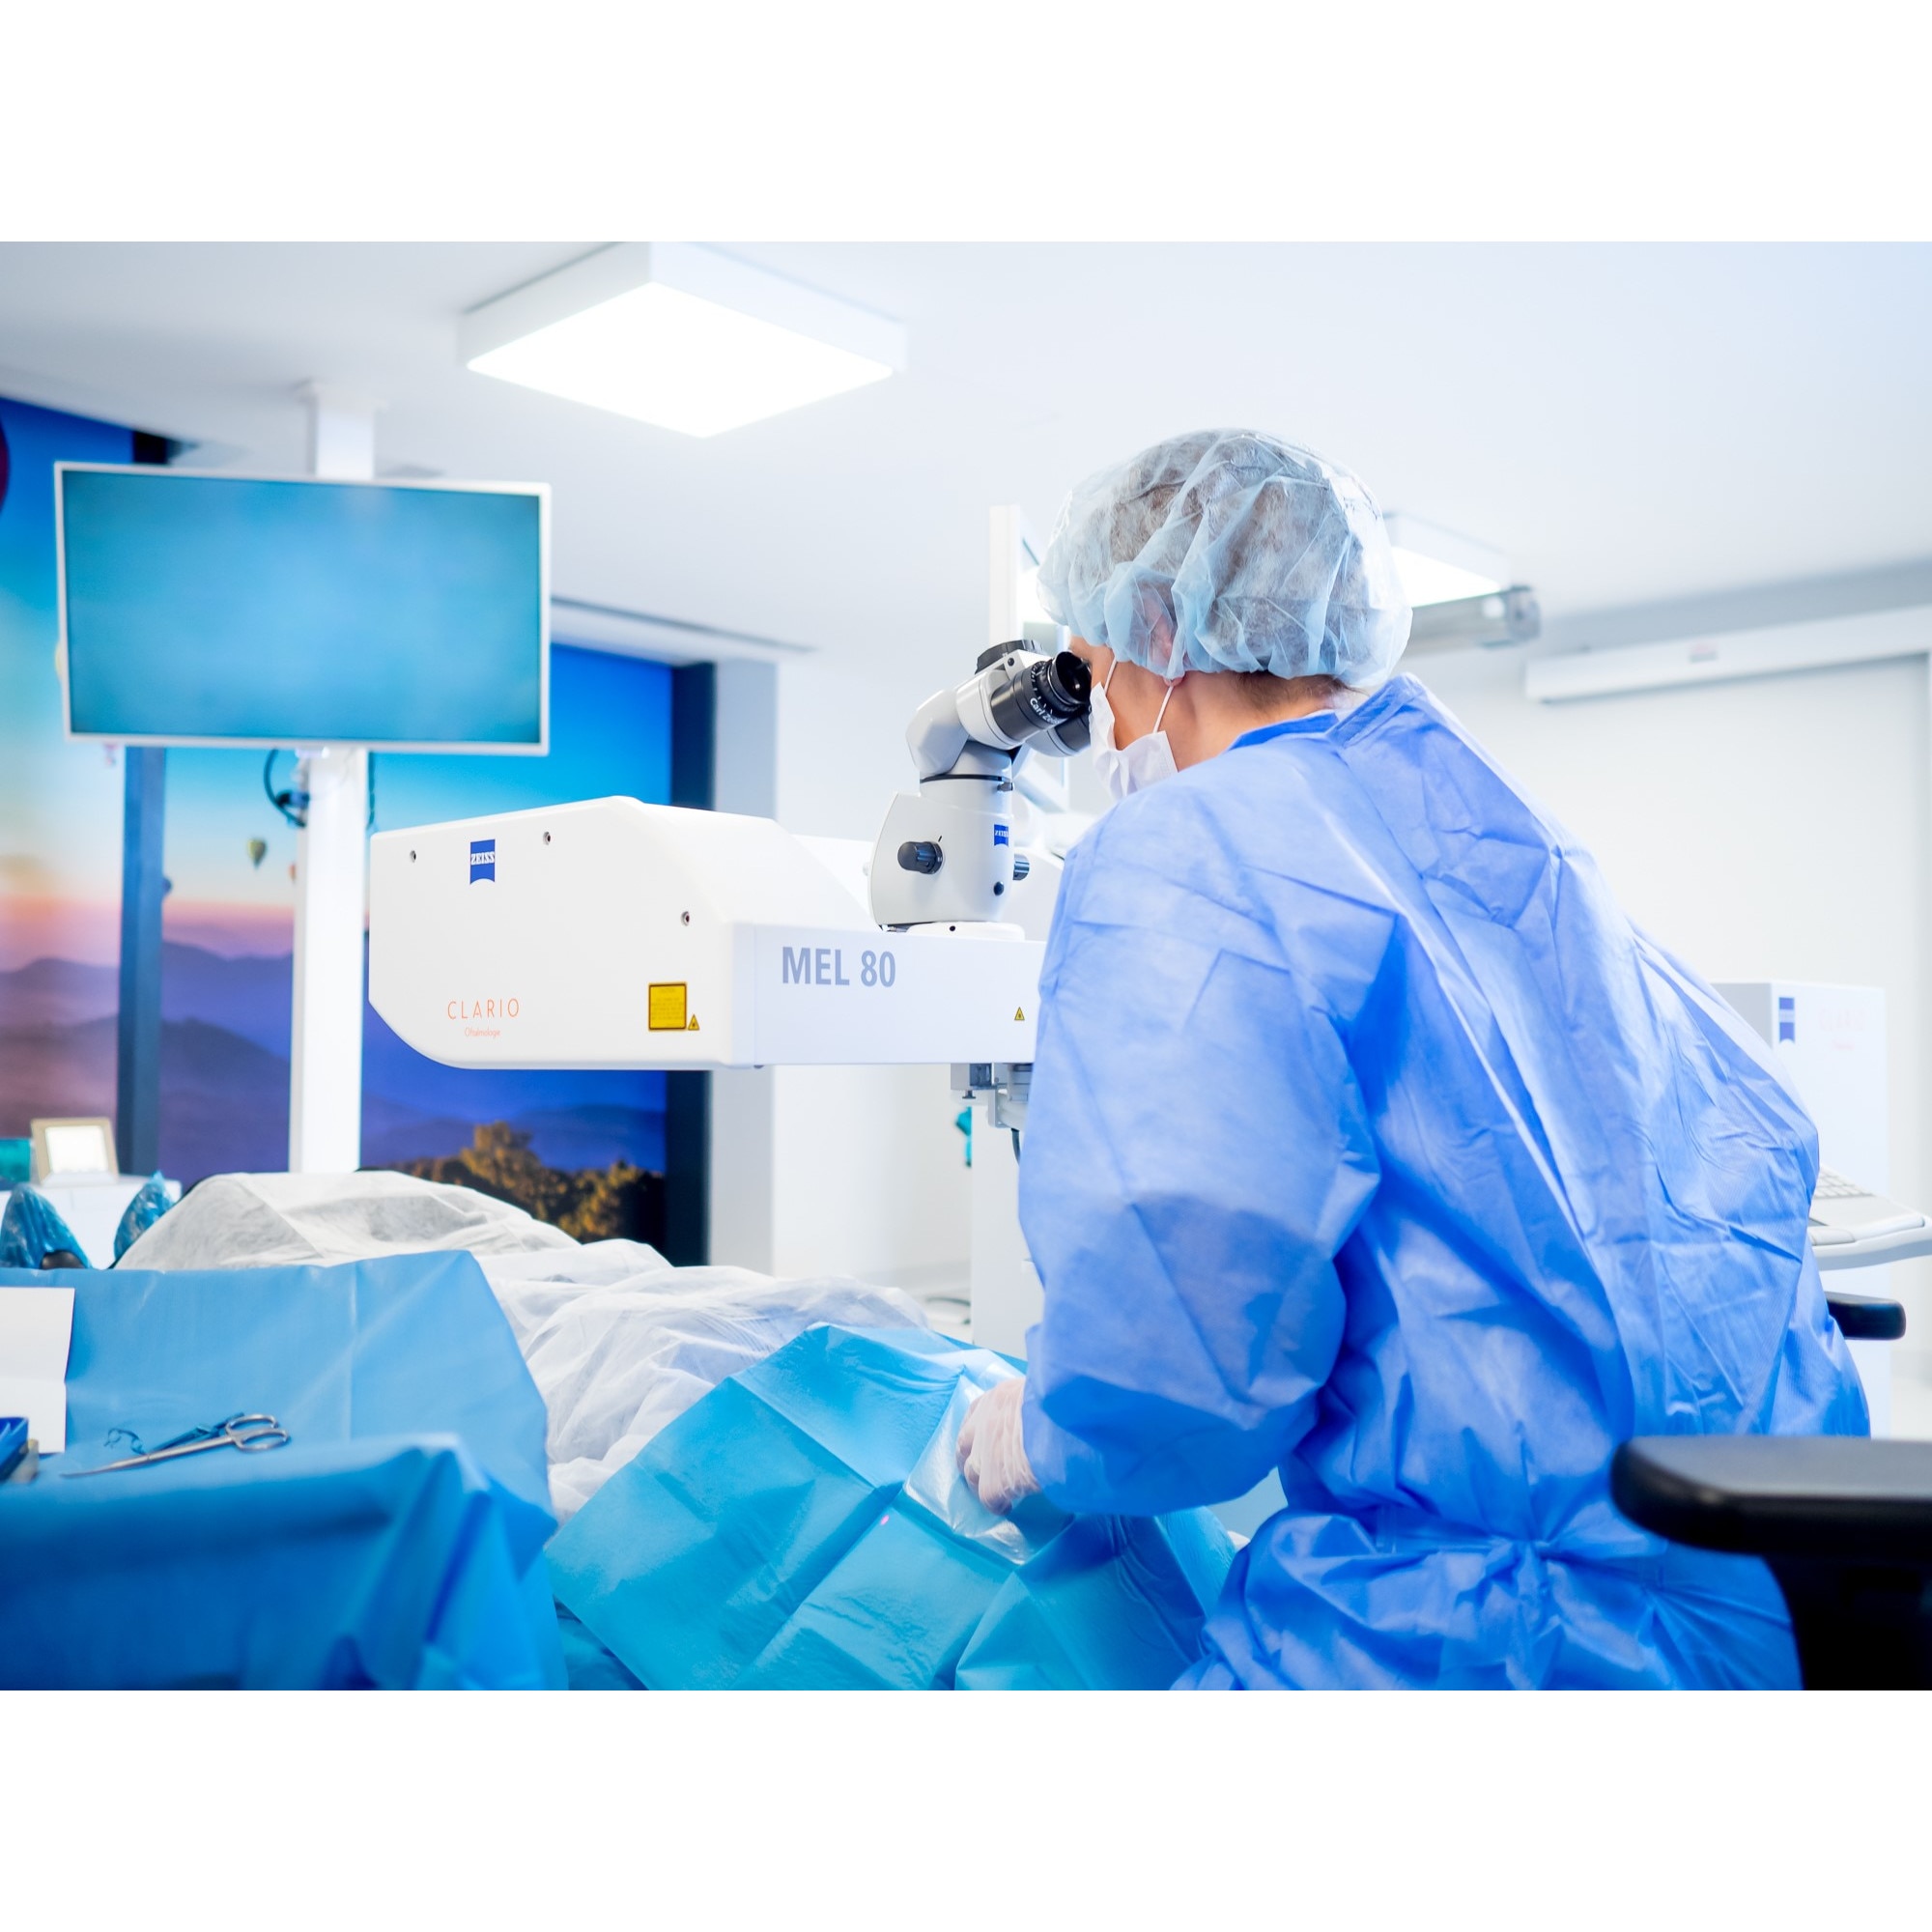 Articole de chirurgie cu laser oftalmologie, operatii oftalmologice cu laser